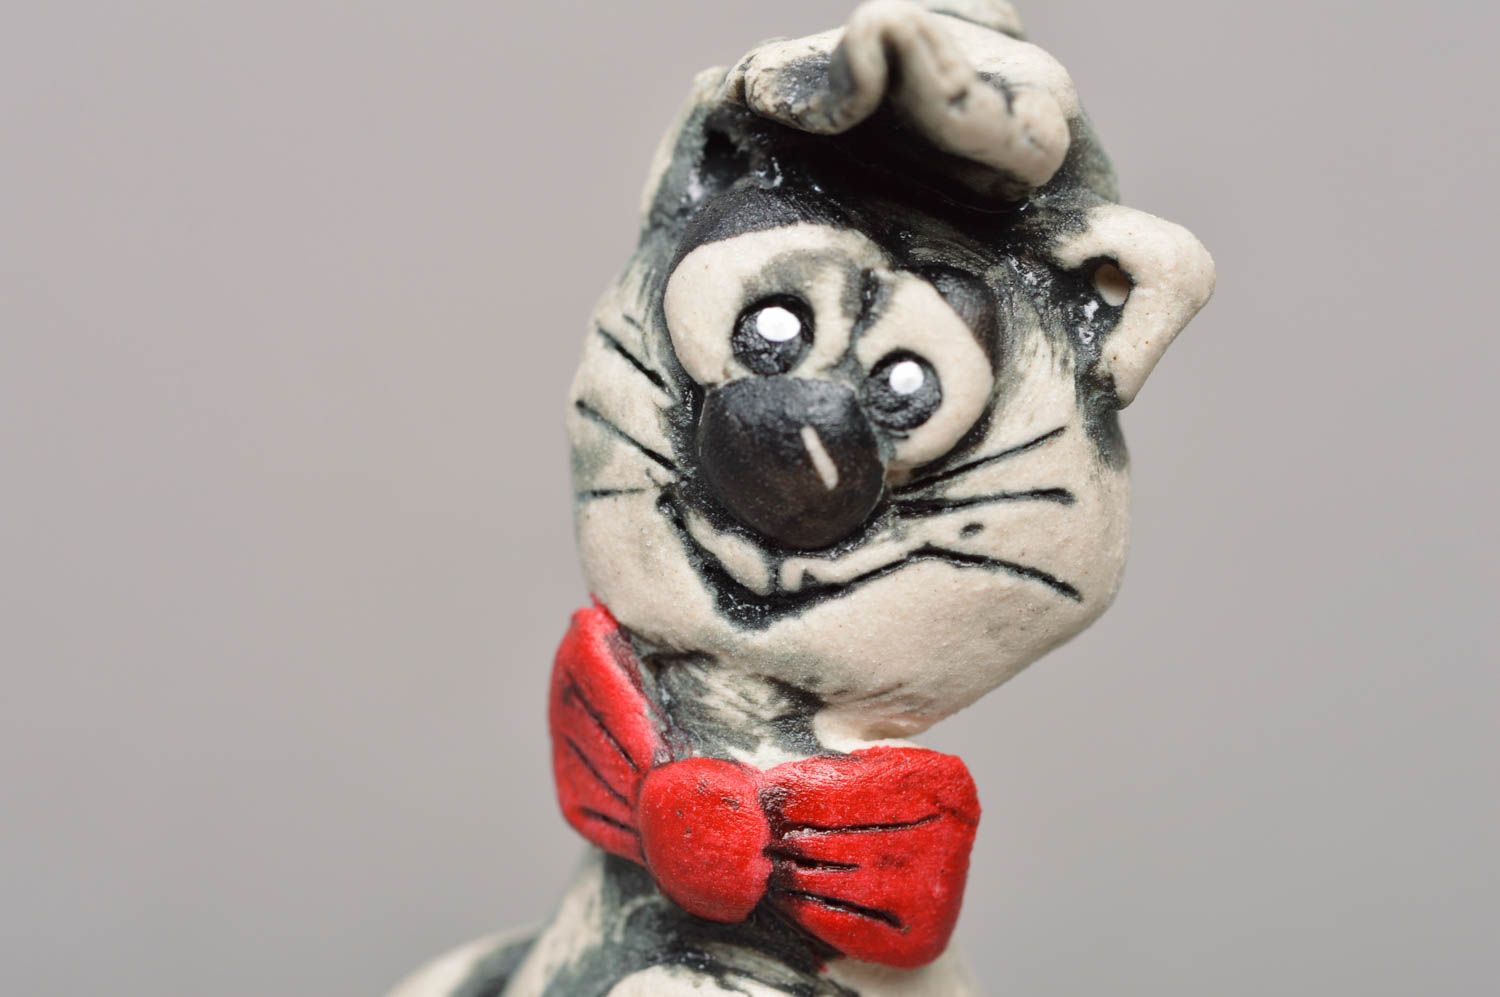 Фарфоровая статуэтка расписанная глазурью и акрилом хэнд мэйд Кот в кепке фото 2